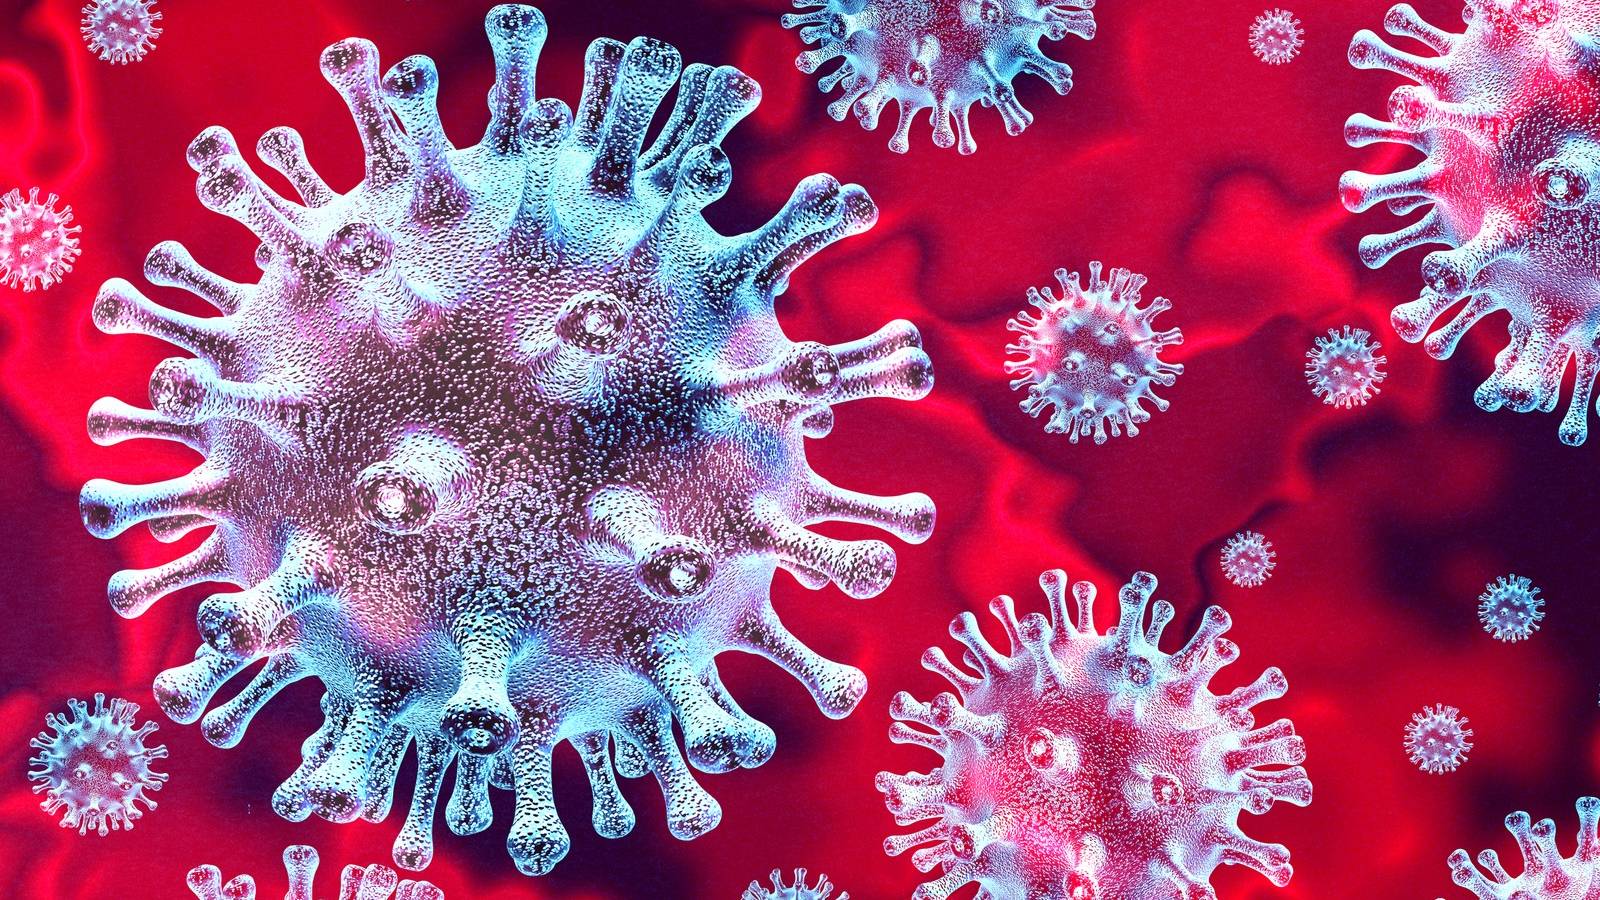 Koronavirus DSU:n ilmoitus suojanaamion käyttömääräysten kiistämisestä